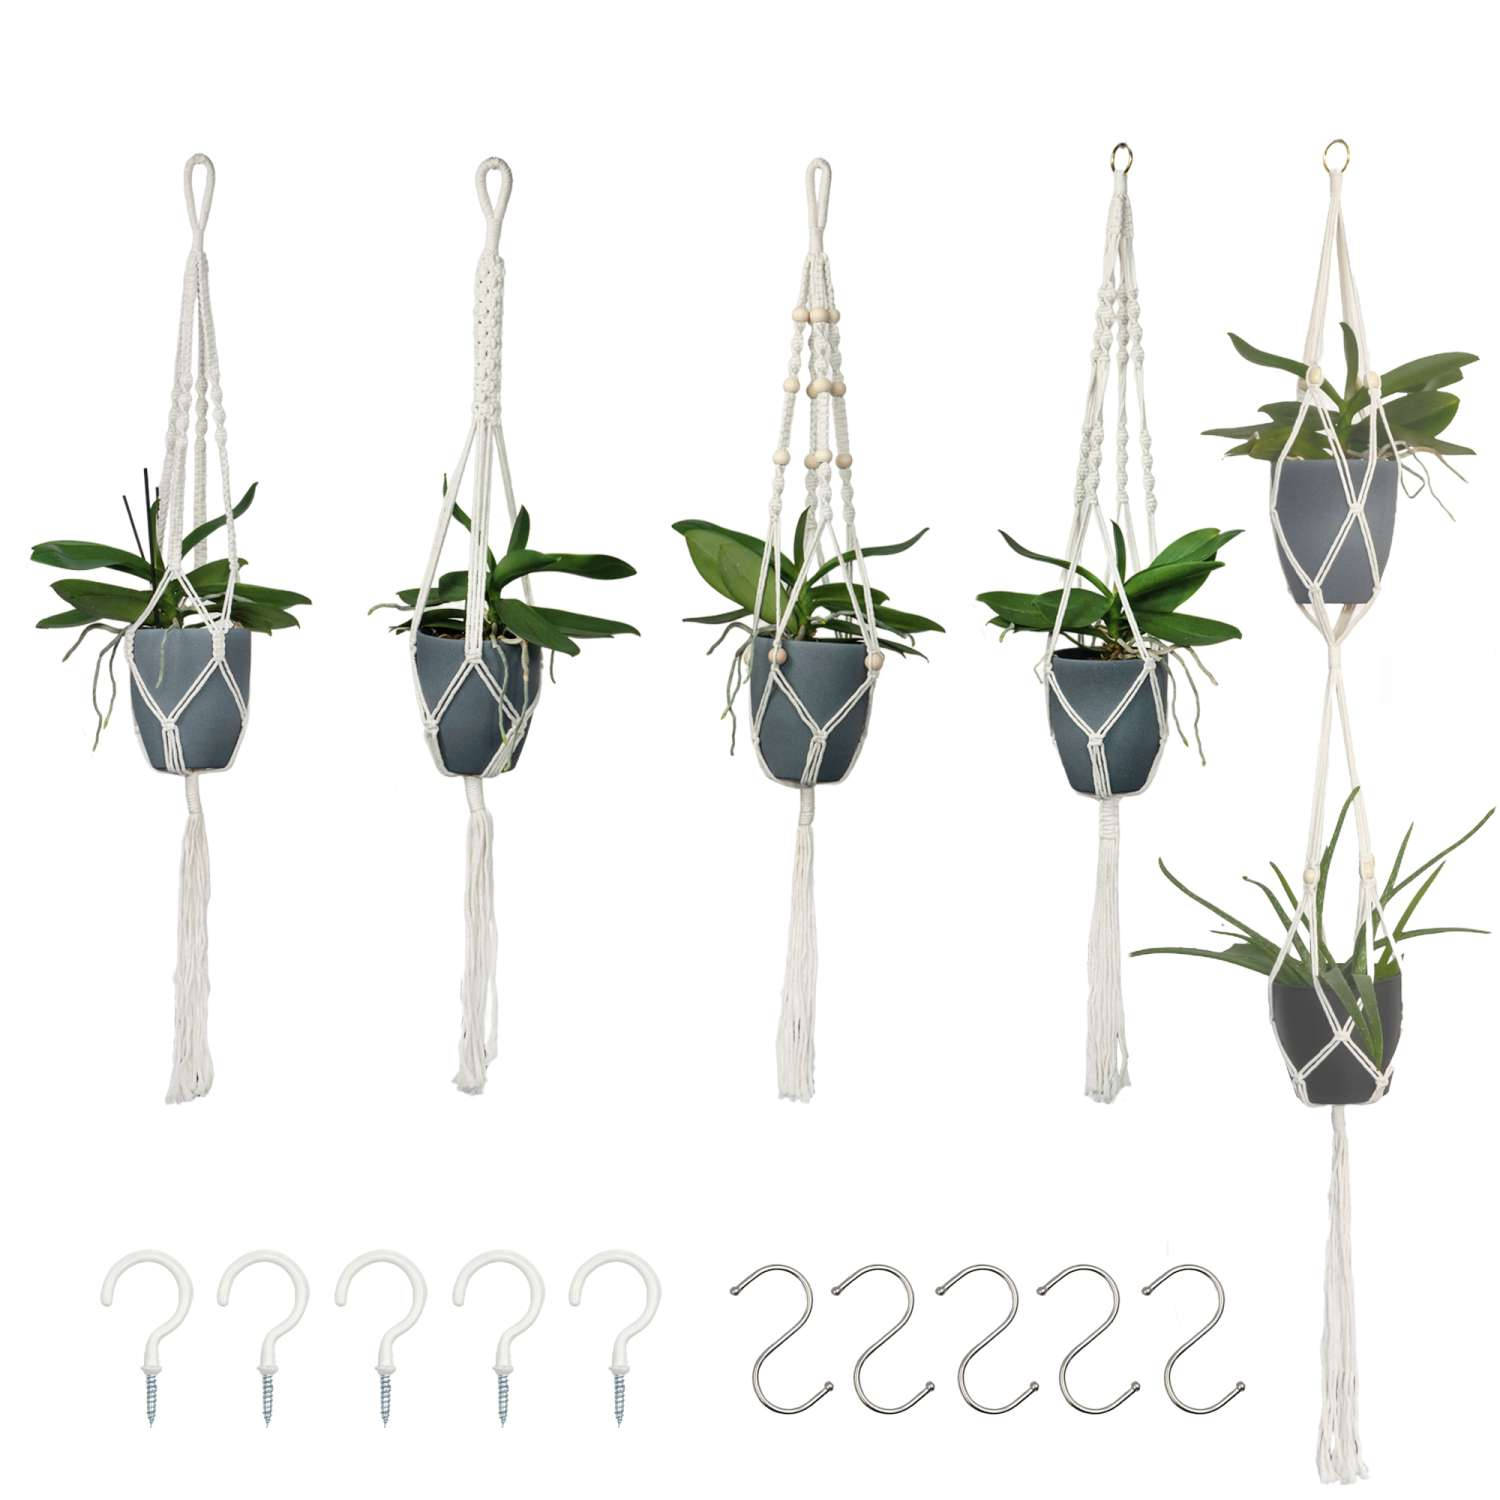 Intirilife Set van 5 Macrame hangende Bloempotten in Wit met ophangsysteem - Plantenhanger, plantenhouder gemaakt van katoenen touwen met bijpassende haken om op te hangen